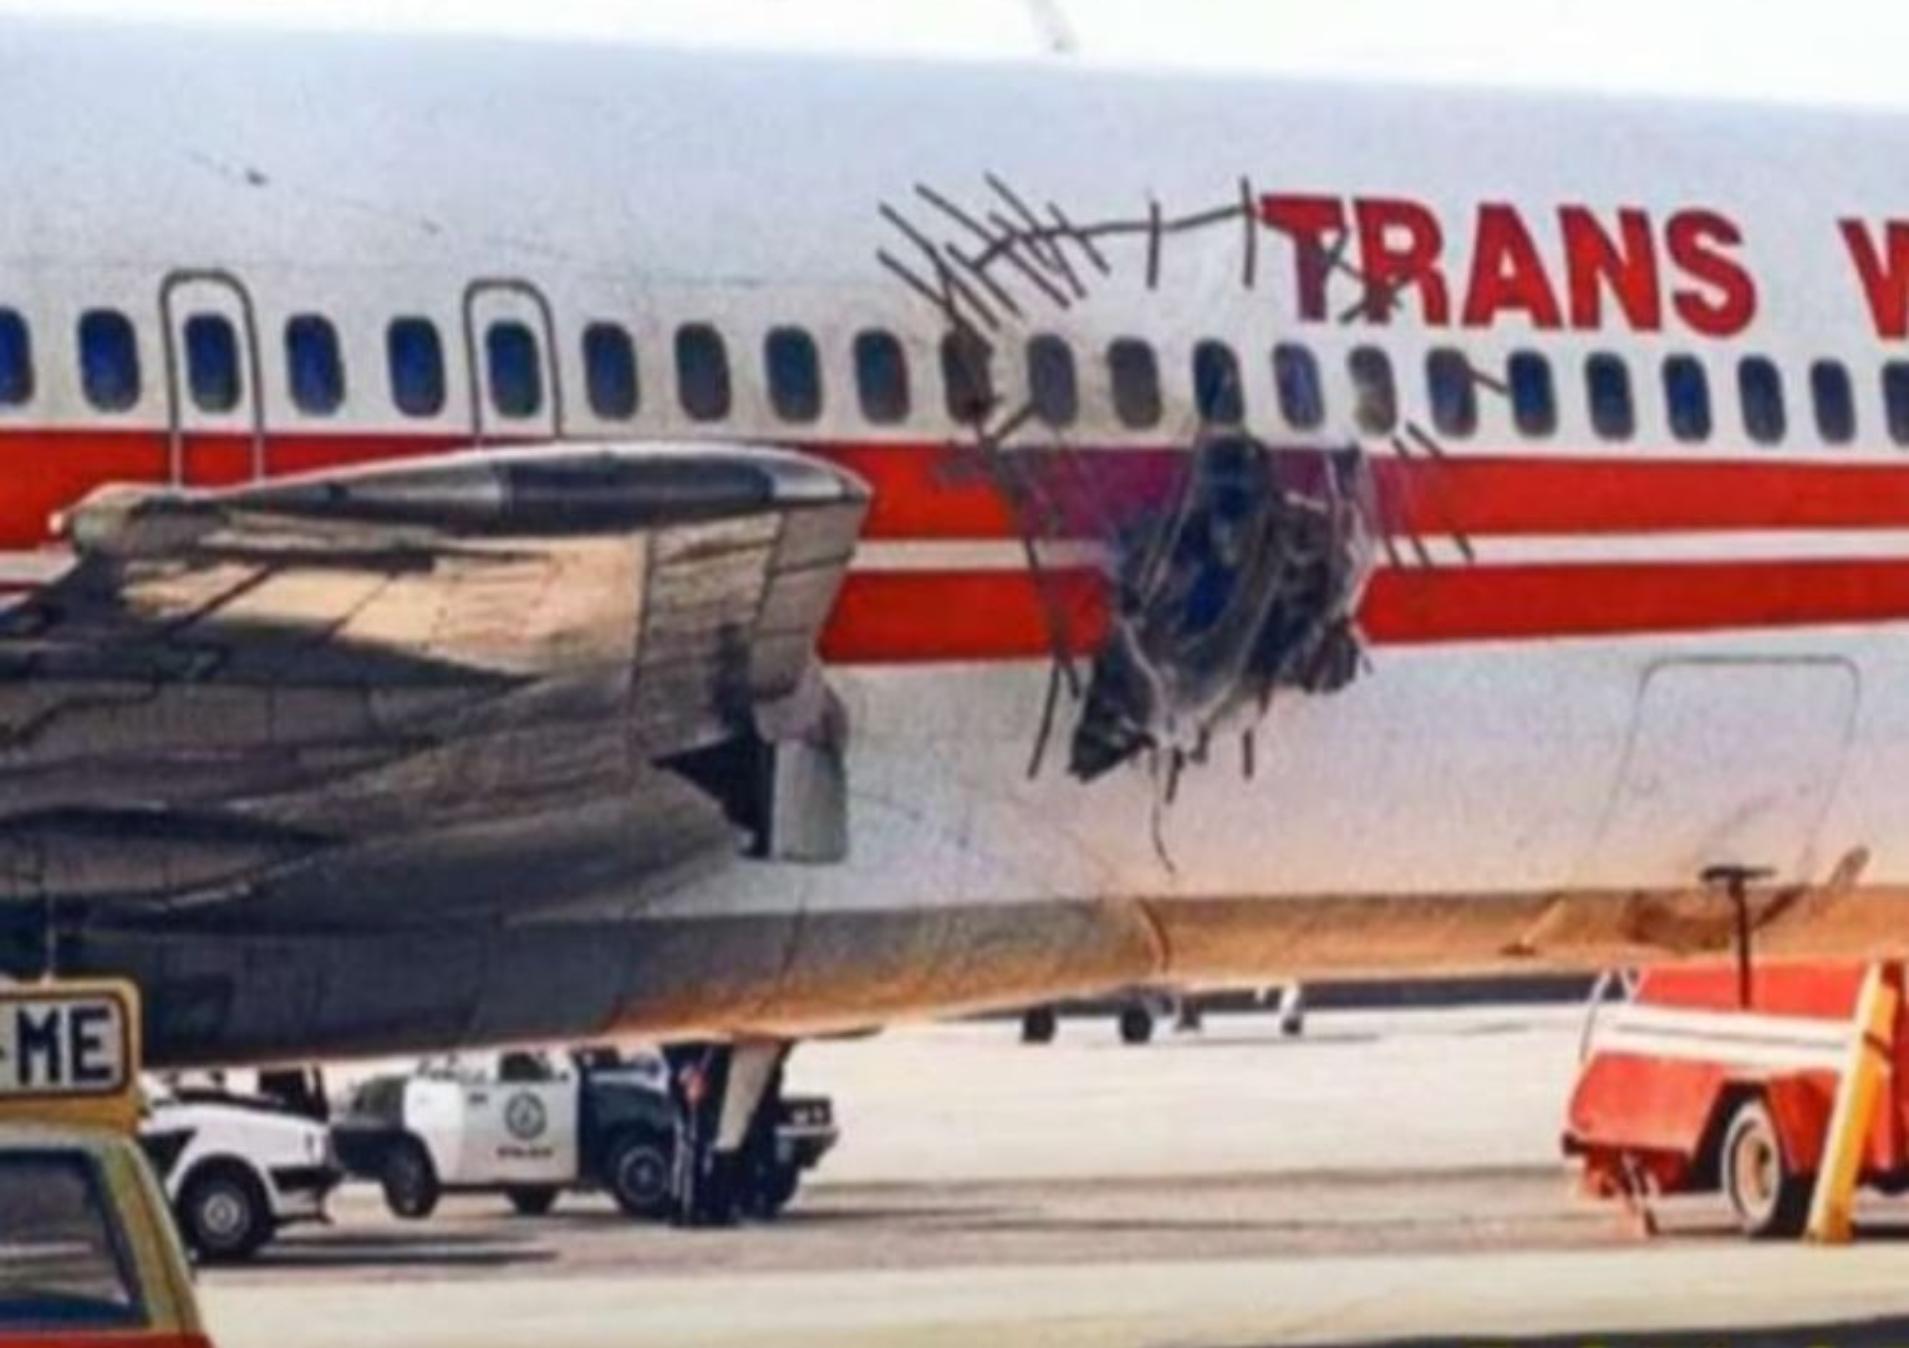 Η αεροπορική τραγωδία που συγκλόνισε την Ελλάδα : “Τρόμος πάνω από το Άργος” – “Σώματα έπεφταν από τον ουρανό”